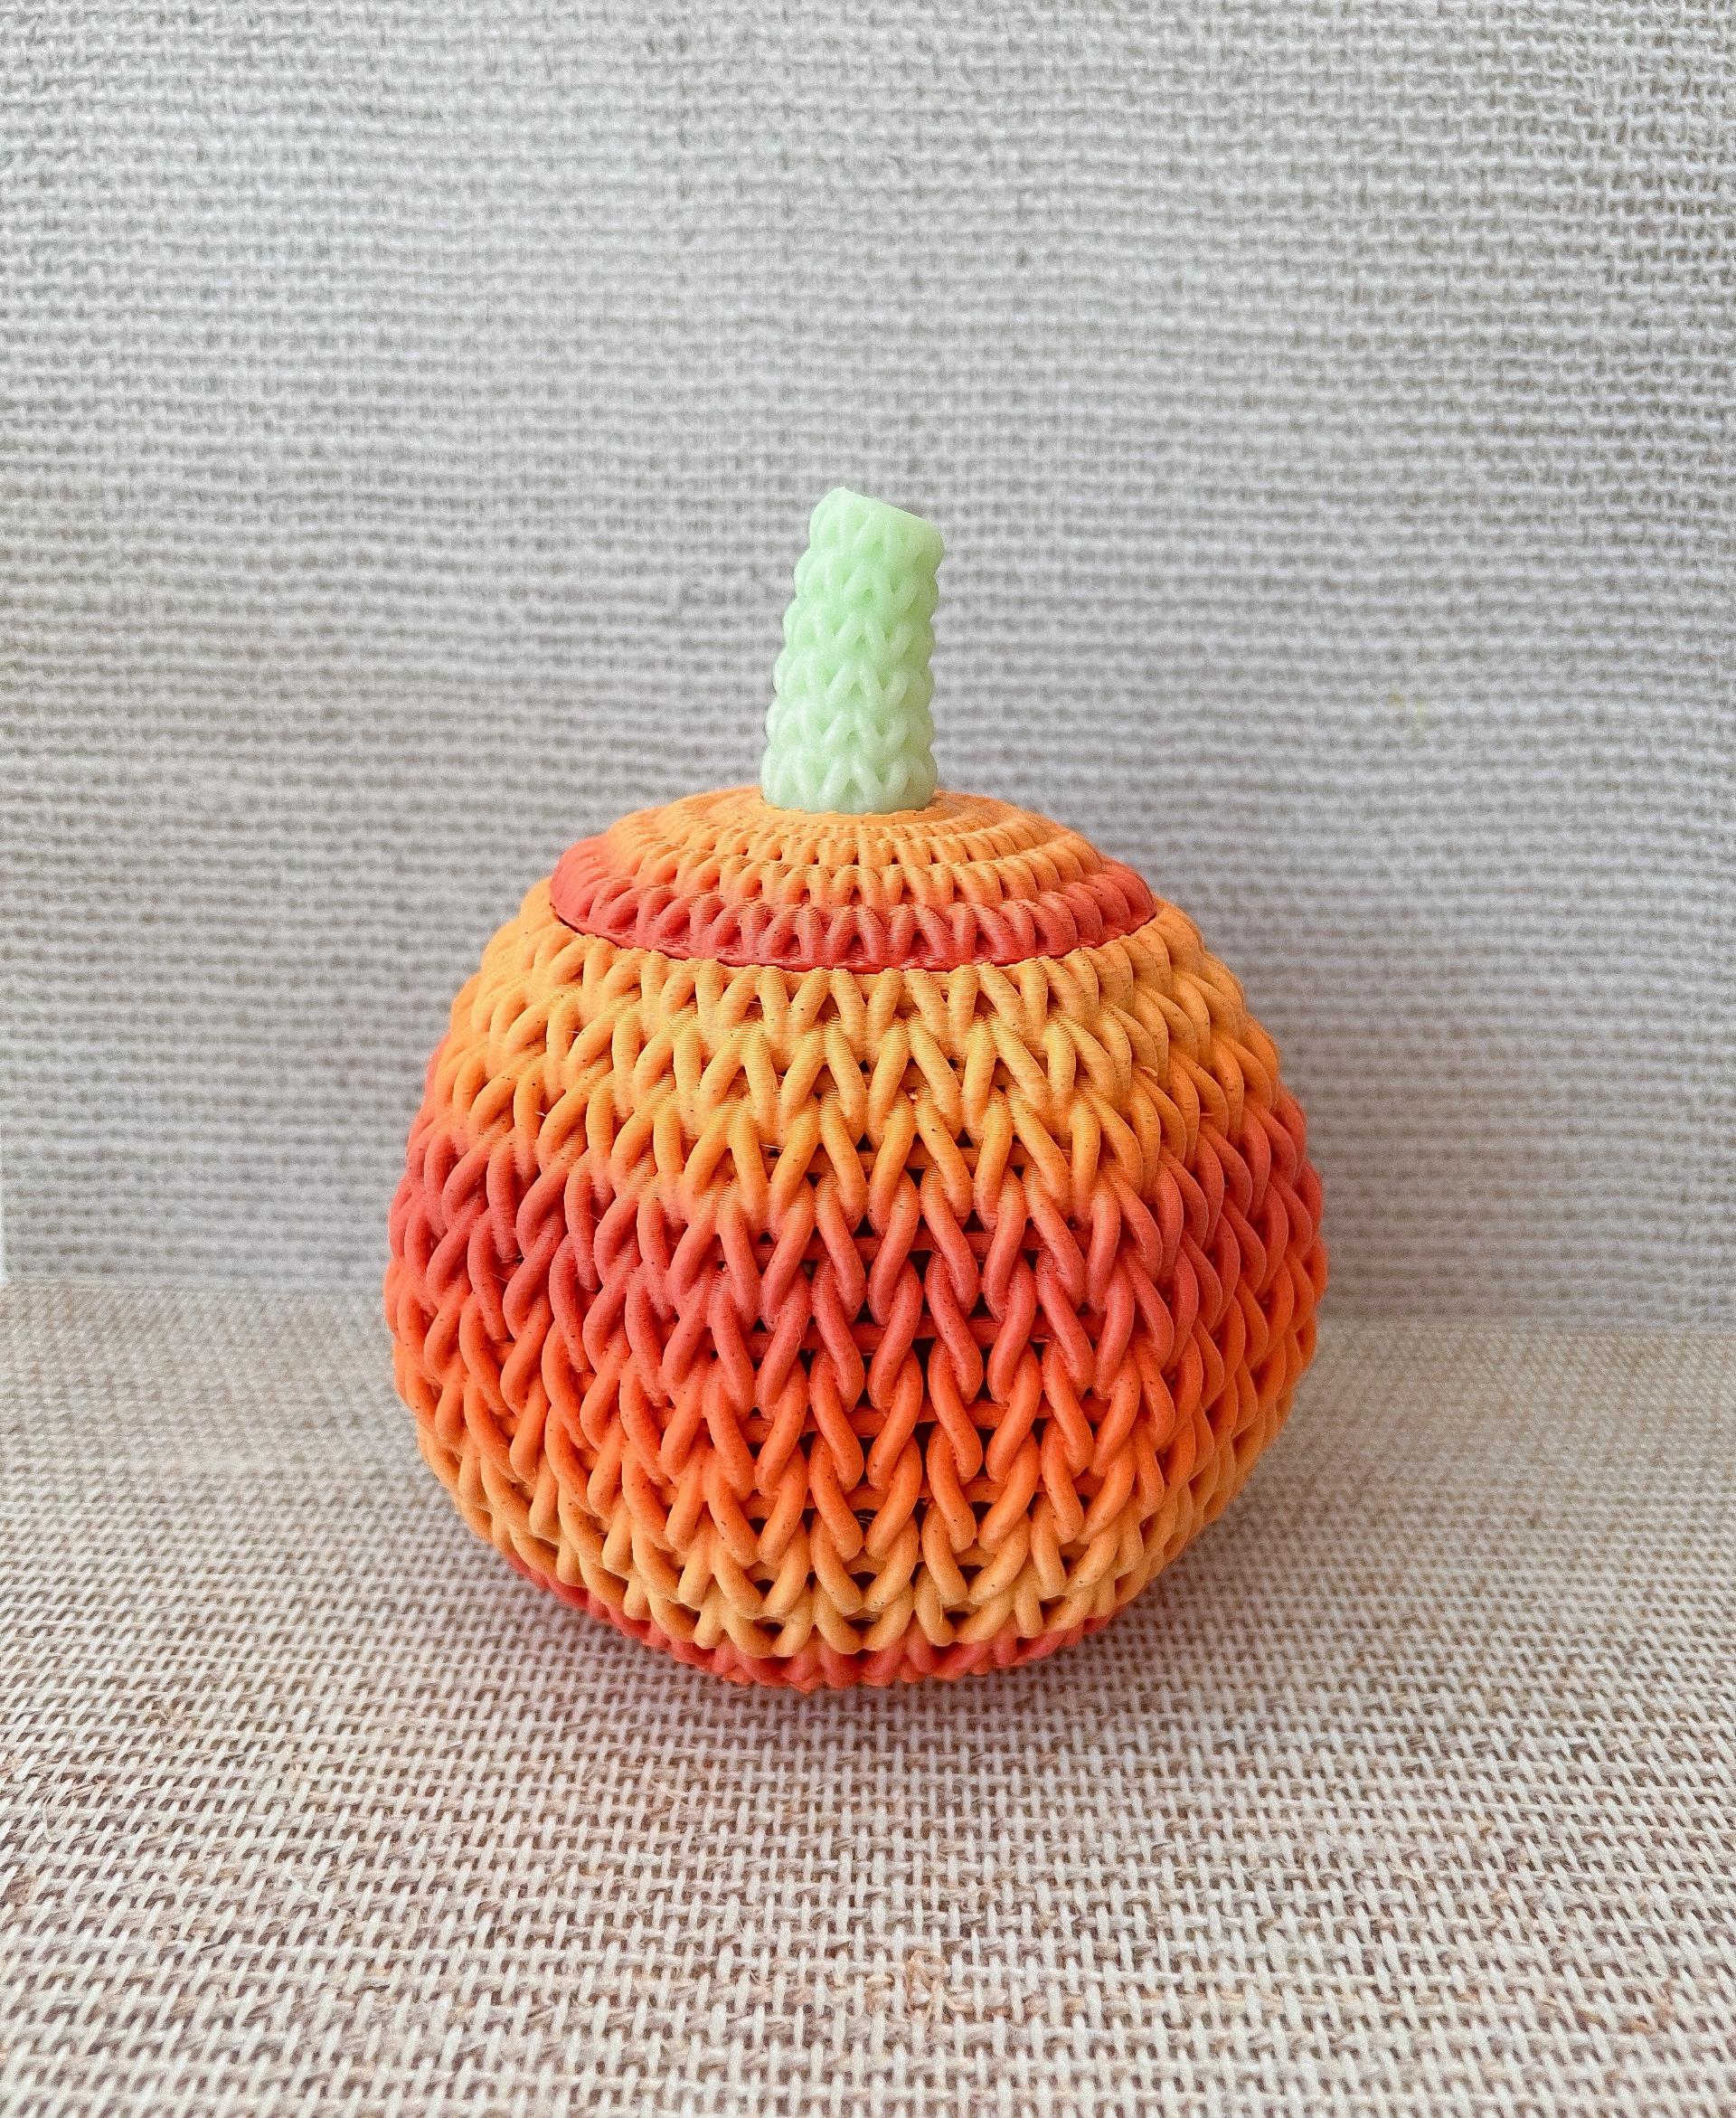 Knitted Pumpkin - cute knitted big pumpkin!
polymaker halloween filament. - 3d model